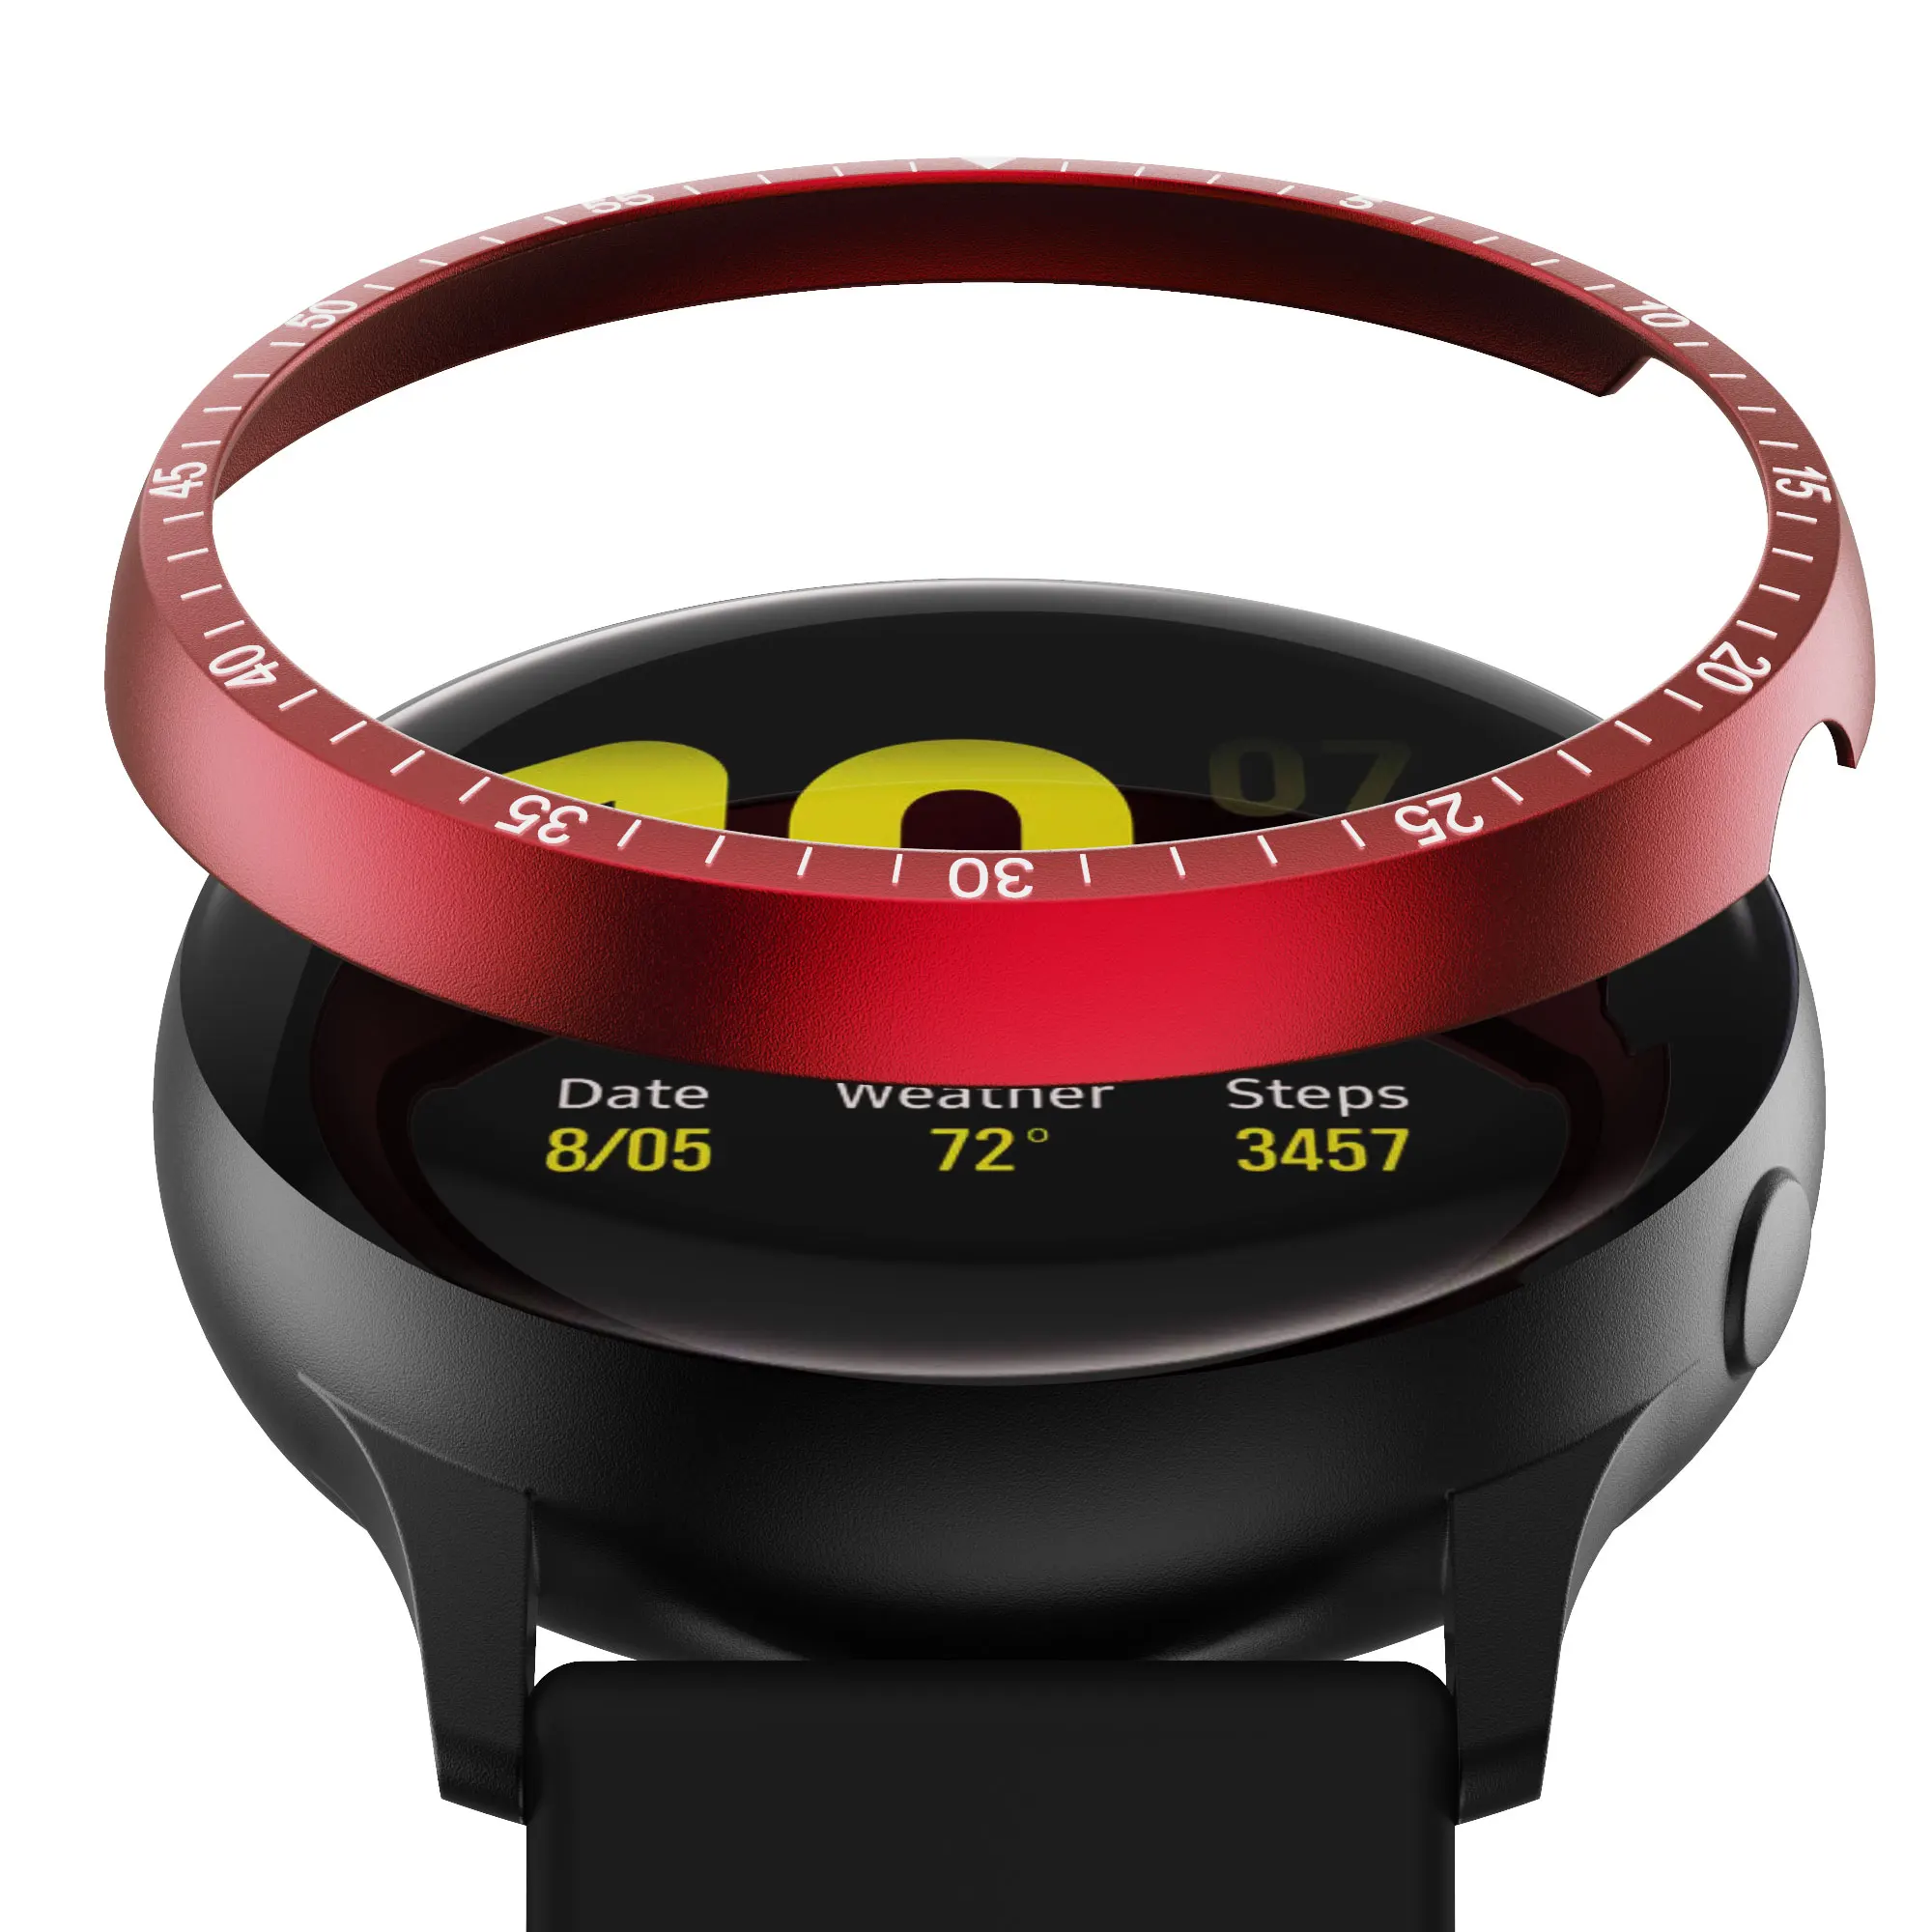 Κράμα αργιλίου Ρολόι Bezel Πλαισίων Κάλυψης Για το Samsung Galaxy ρολόι ενεργό 2 40MM 44MM Αντι Γρατσουνιών με το Δαχτυλίδι Μετάλλων Έξυπνο Ρολόι Αξεσουάρ